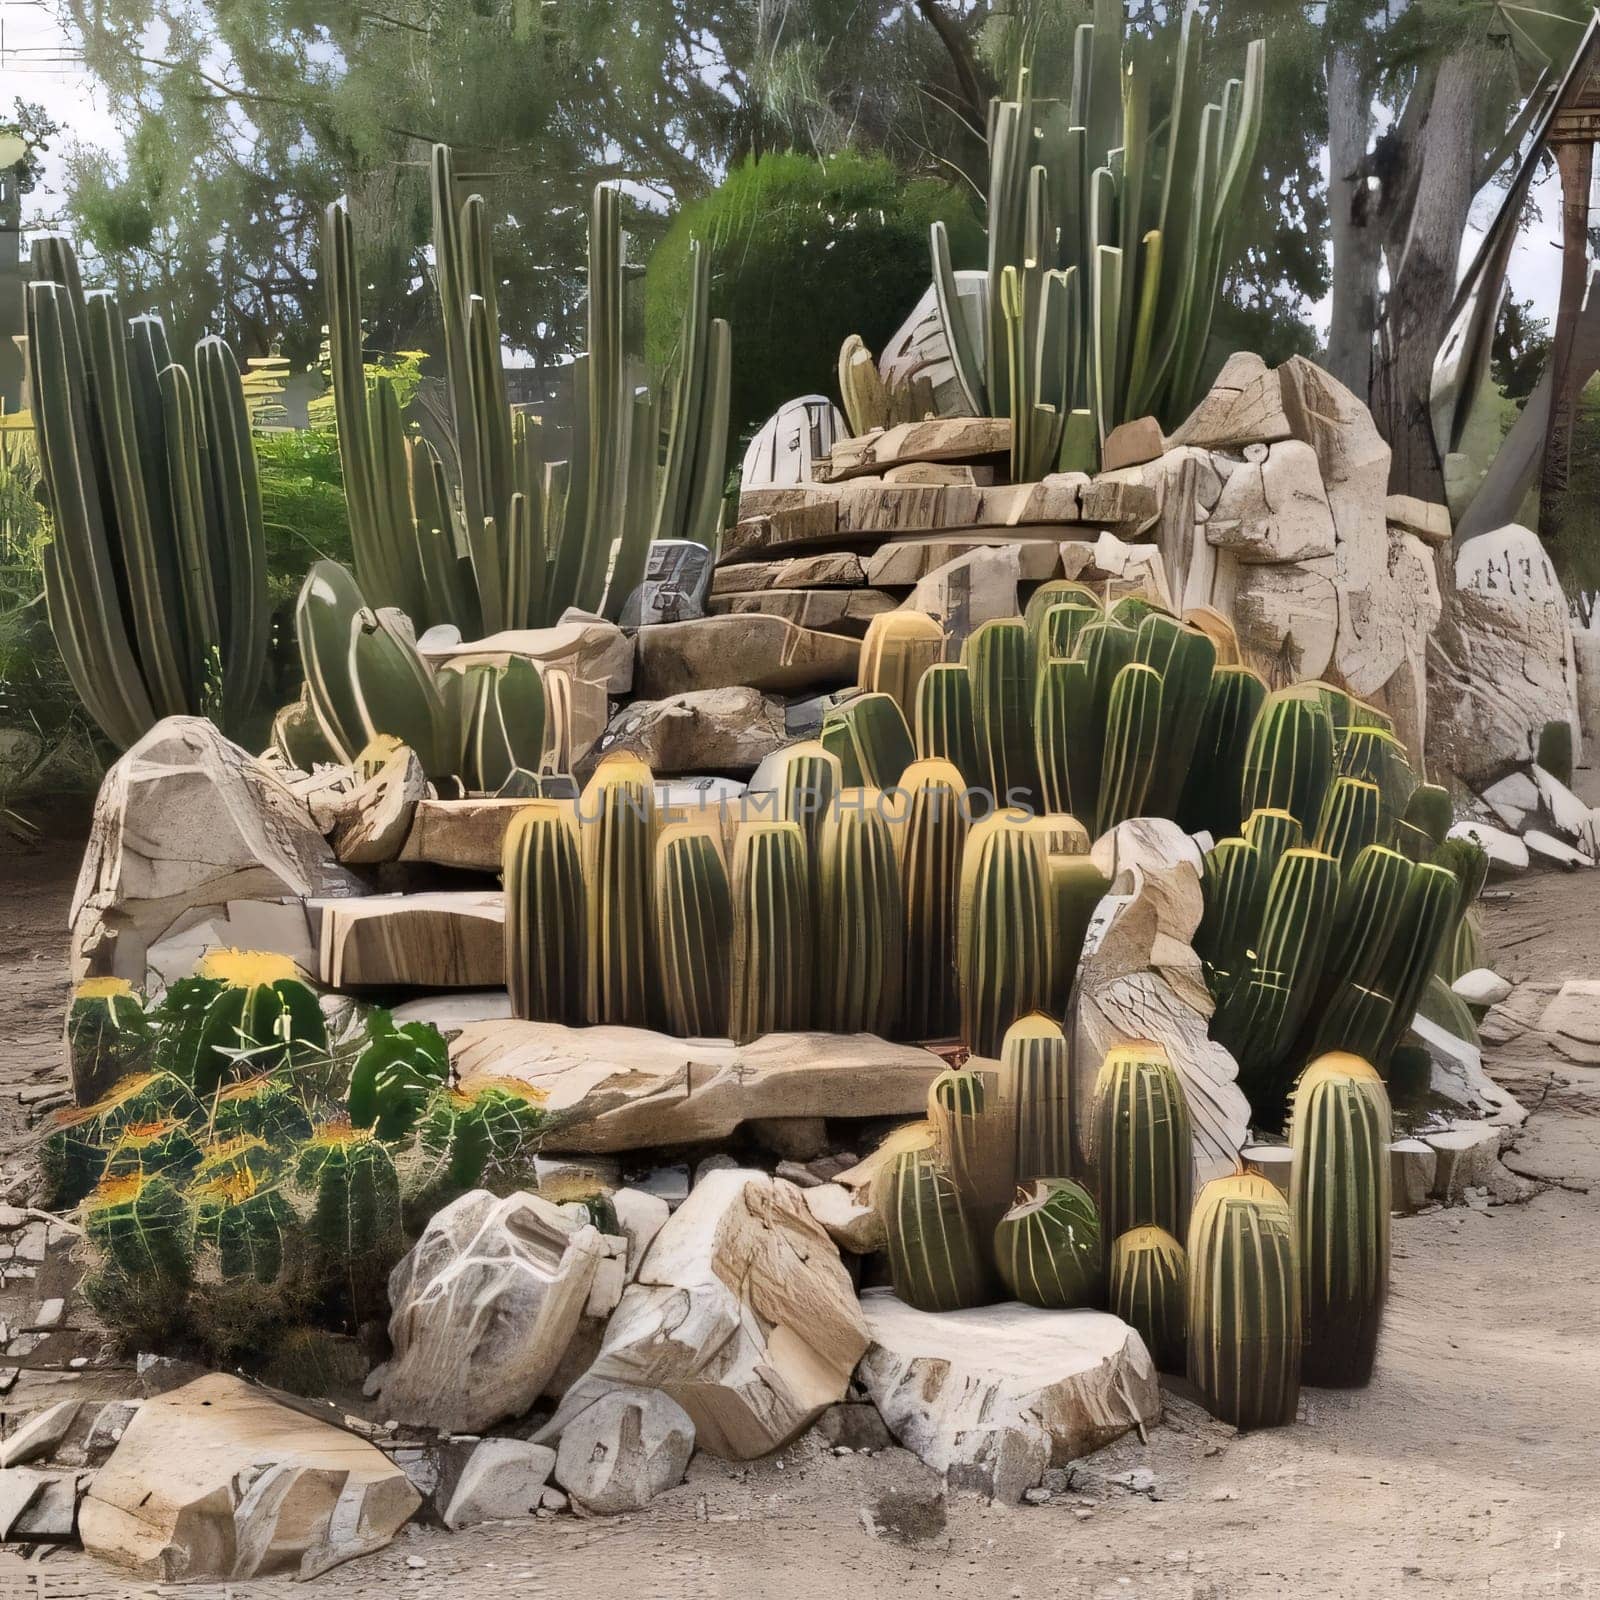 Plant called Cactus: Cactus garden in the botanical garden.